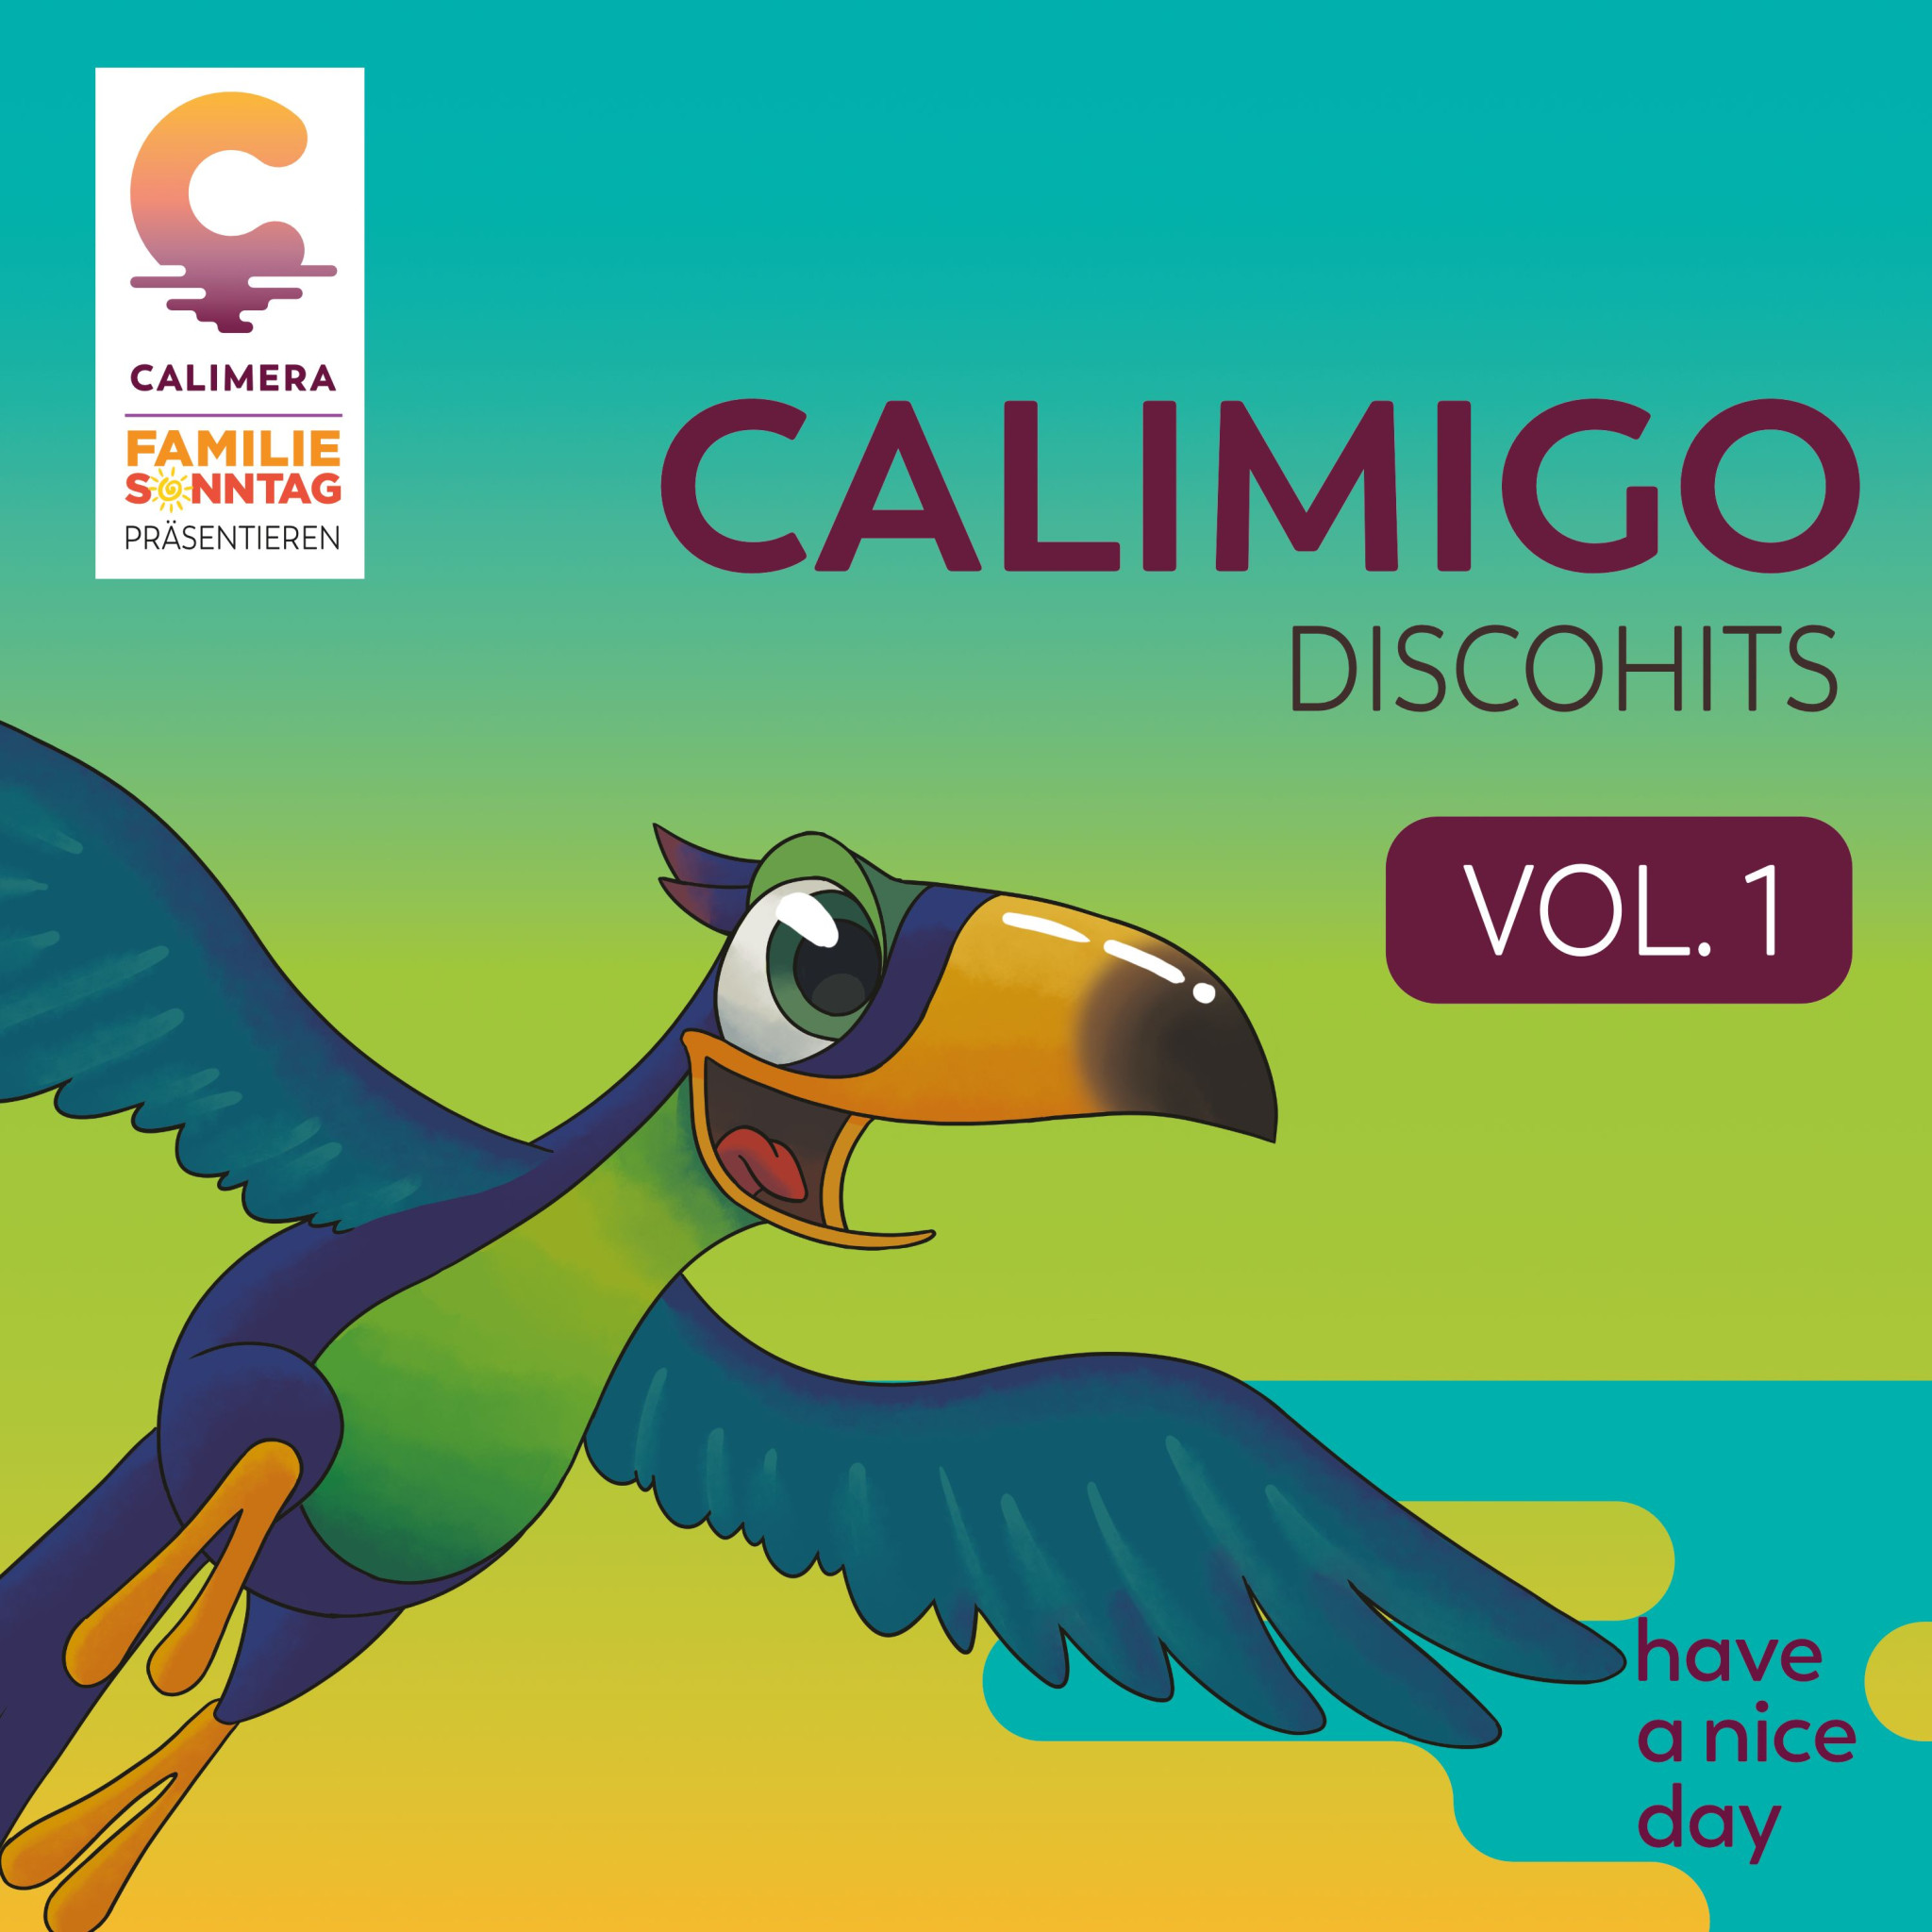 Calimigo Discohits Vol 1 Cover.jpg